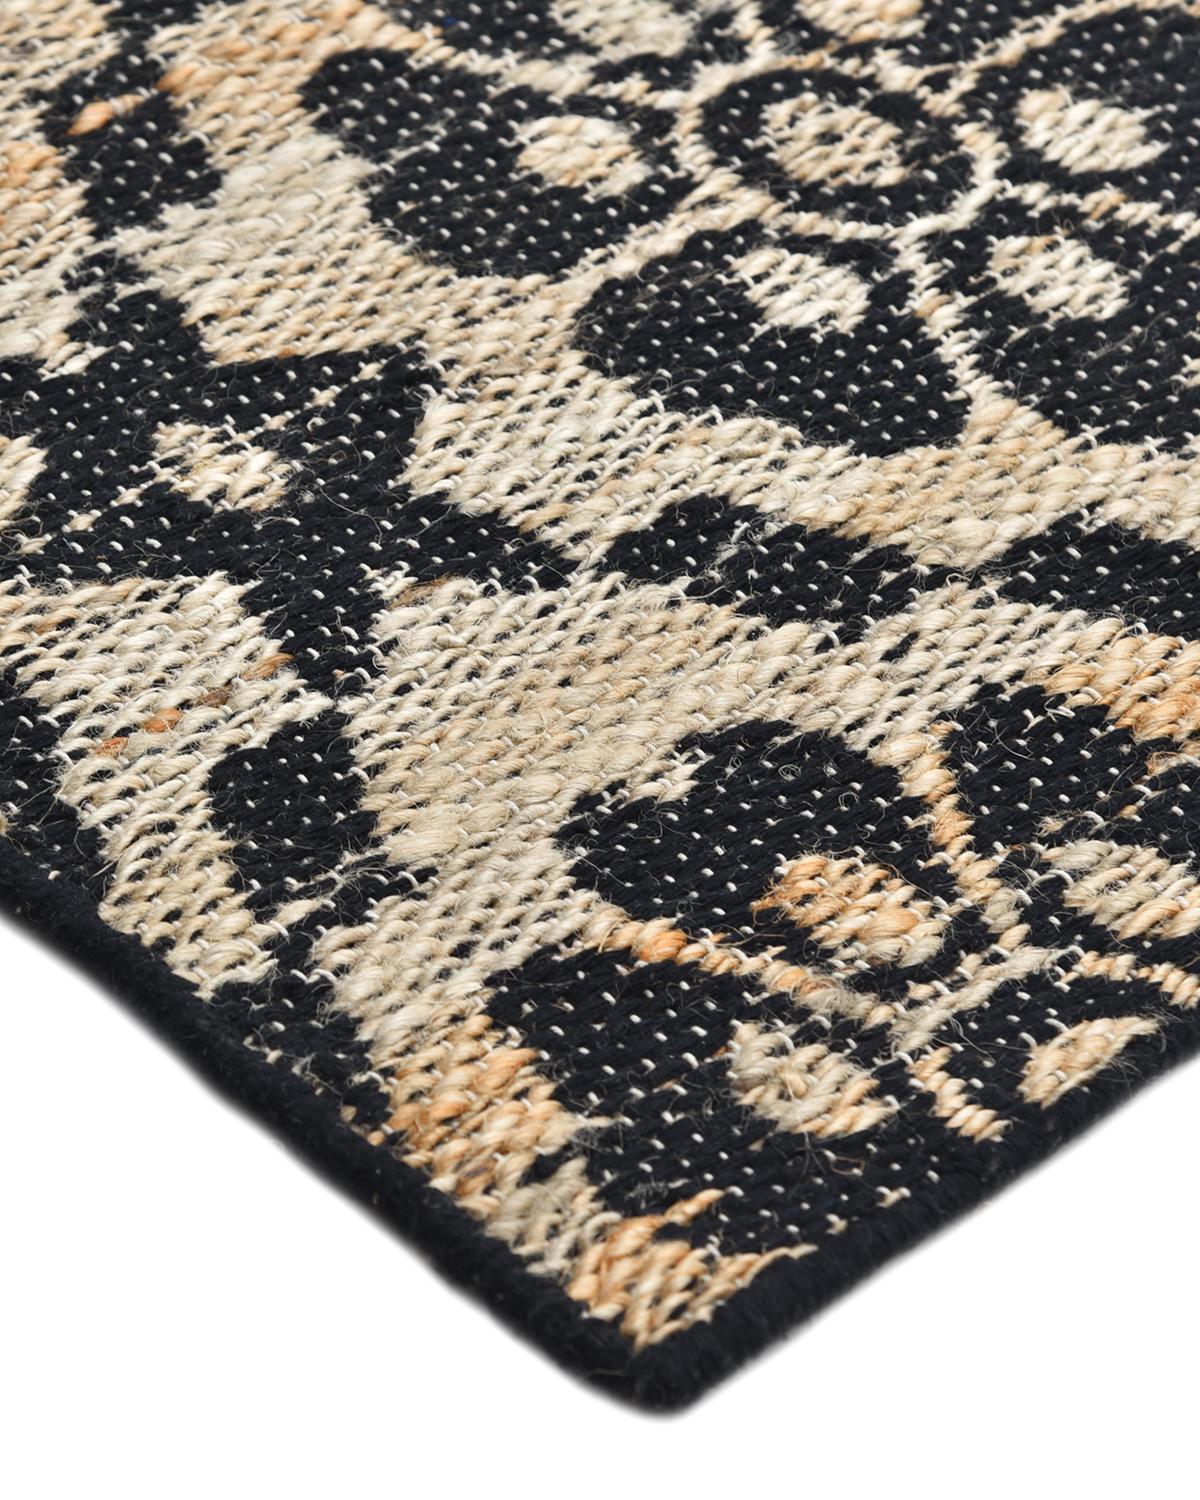 Faisant le lien entre le traditionnel et le moderne, la collection Transitional Jute propose des tapis qui illustrent la polyvalence. Doux sous les pieds grâce à une agréable combinaison de textures, ces tapis d'inspiration vintage confèrent une